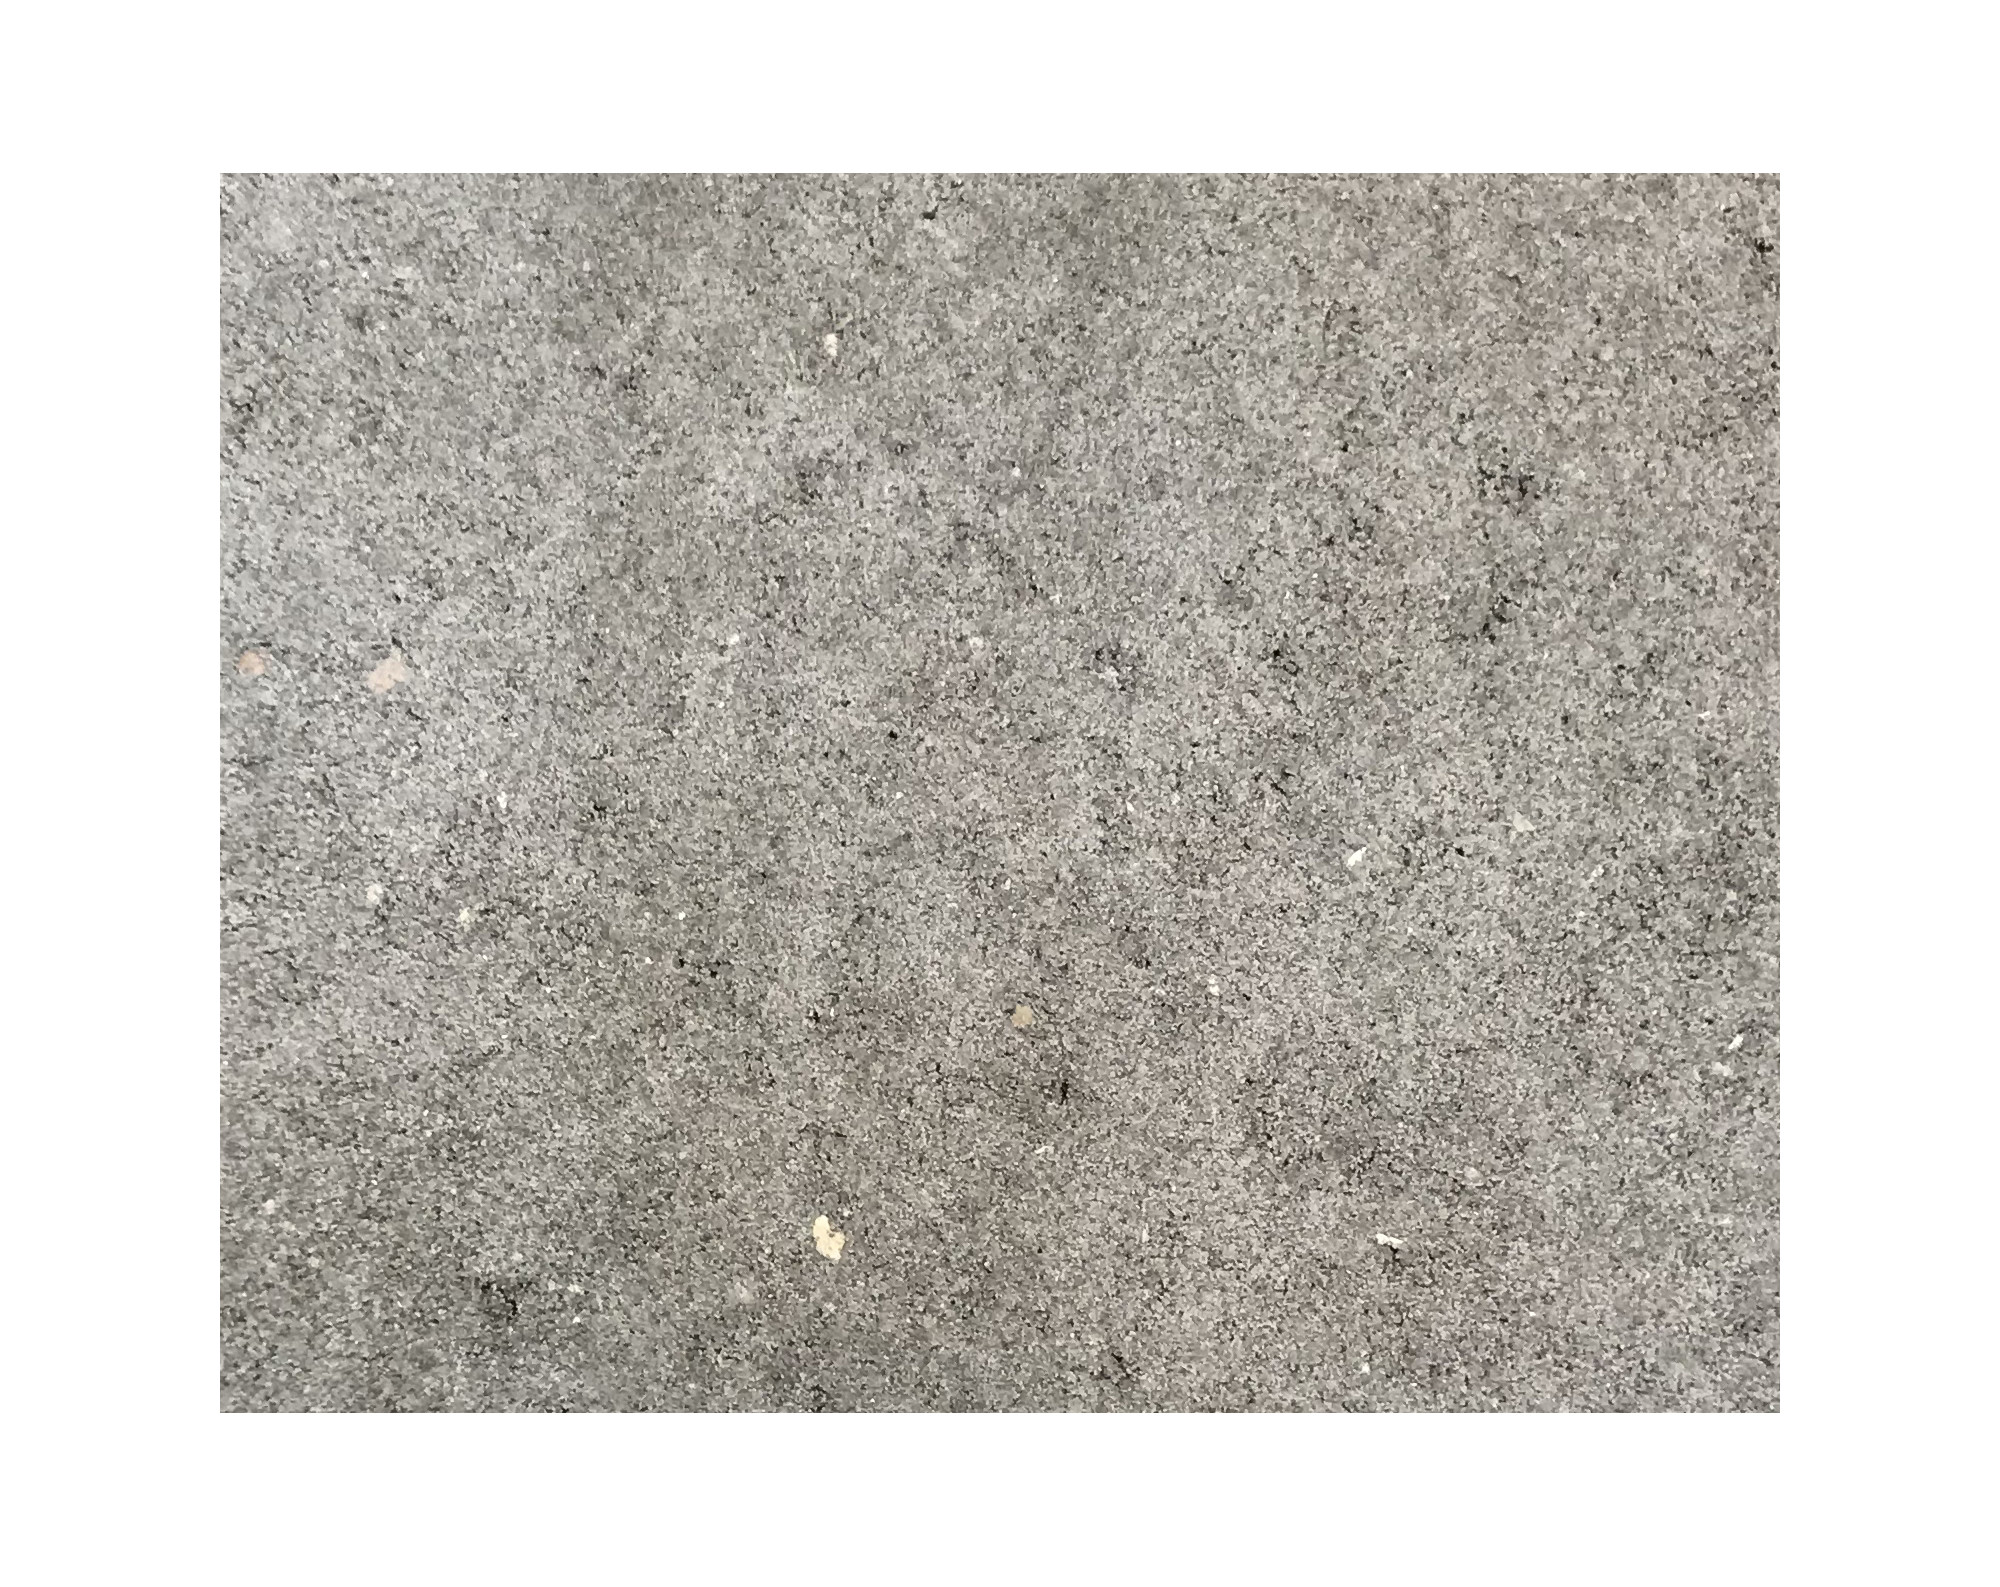 Harmo roc athenset, rustica-serie, ovaal d: 6,00mx11,30m, grijs, beton